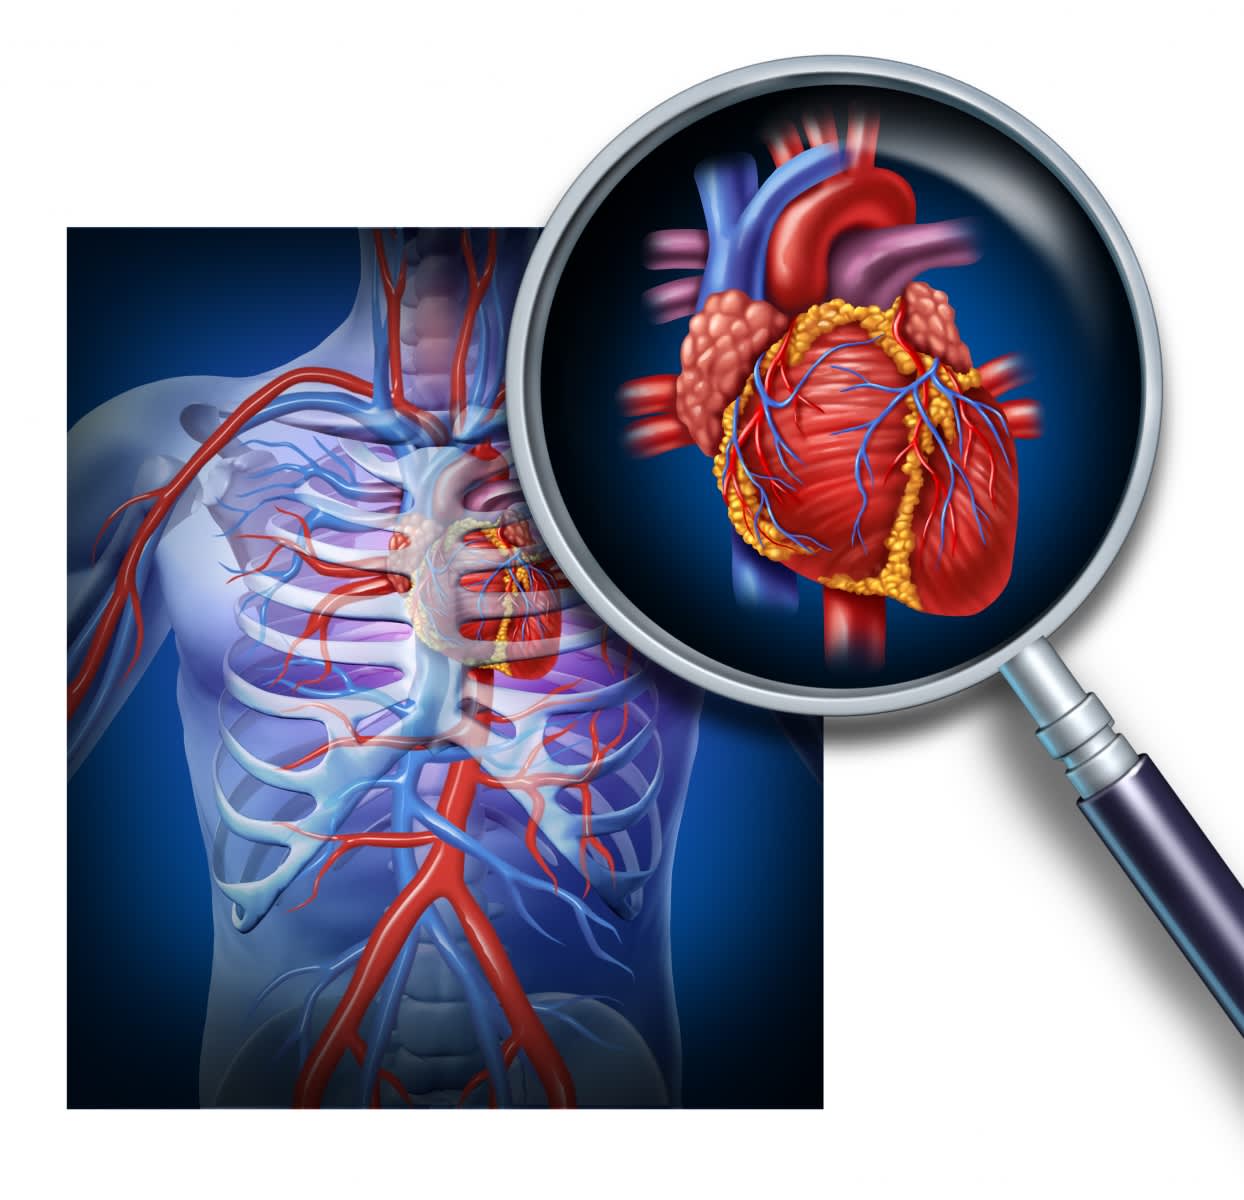 Bilden visar hjärtat och hjärtats blodkärl, där överflödigt kolesterol ackumuleras, vilket leder till förträngning av venerna och försämrad syretillförsel till hjärtat, vilket ger upphov till kranskärlssjukdom.